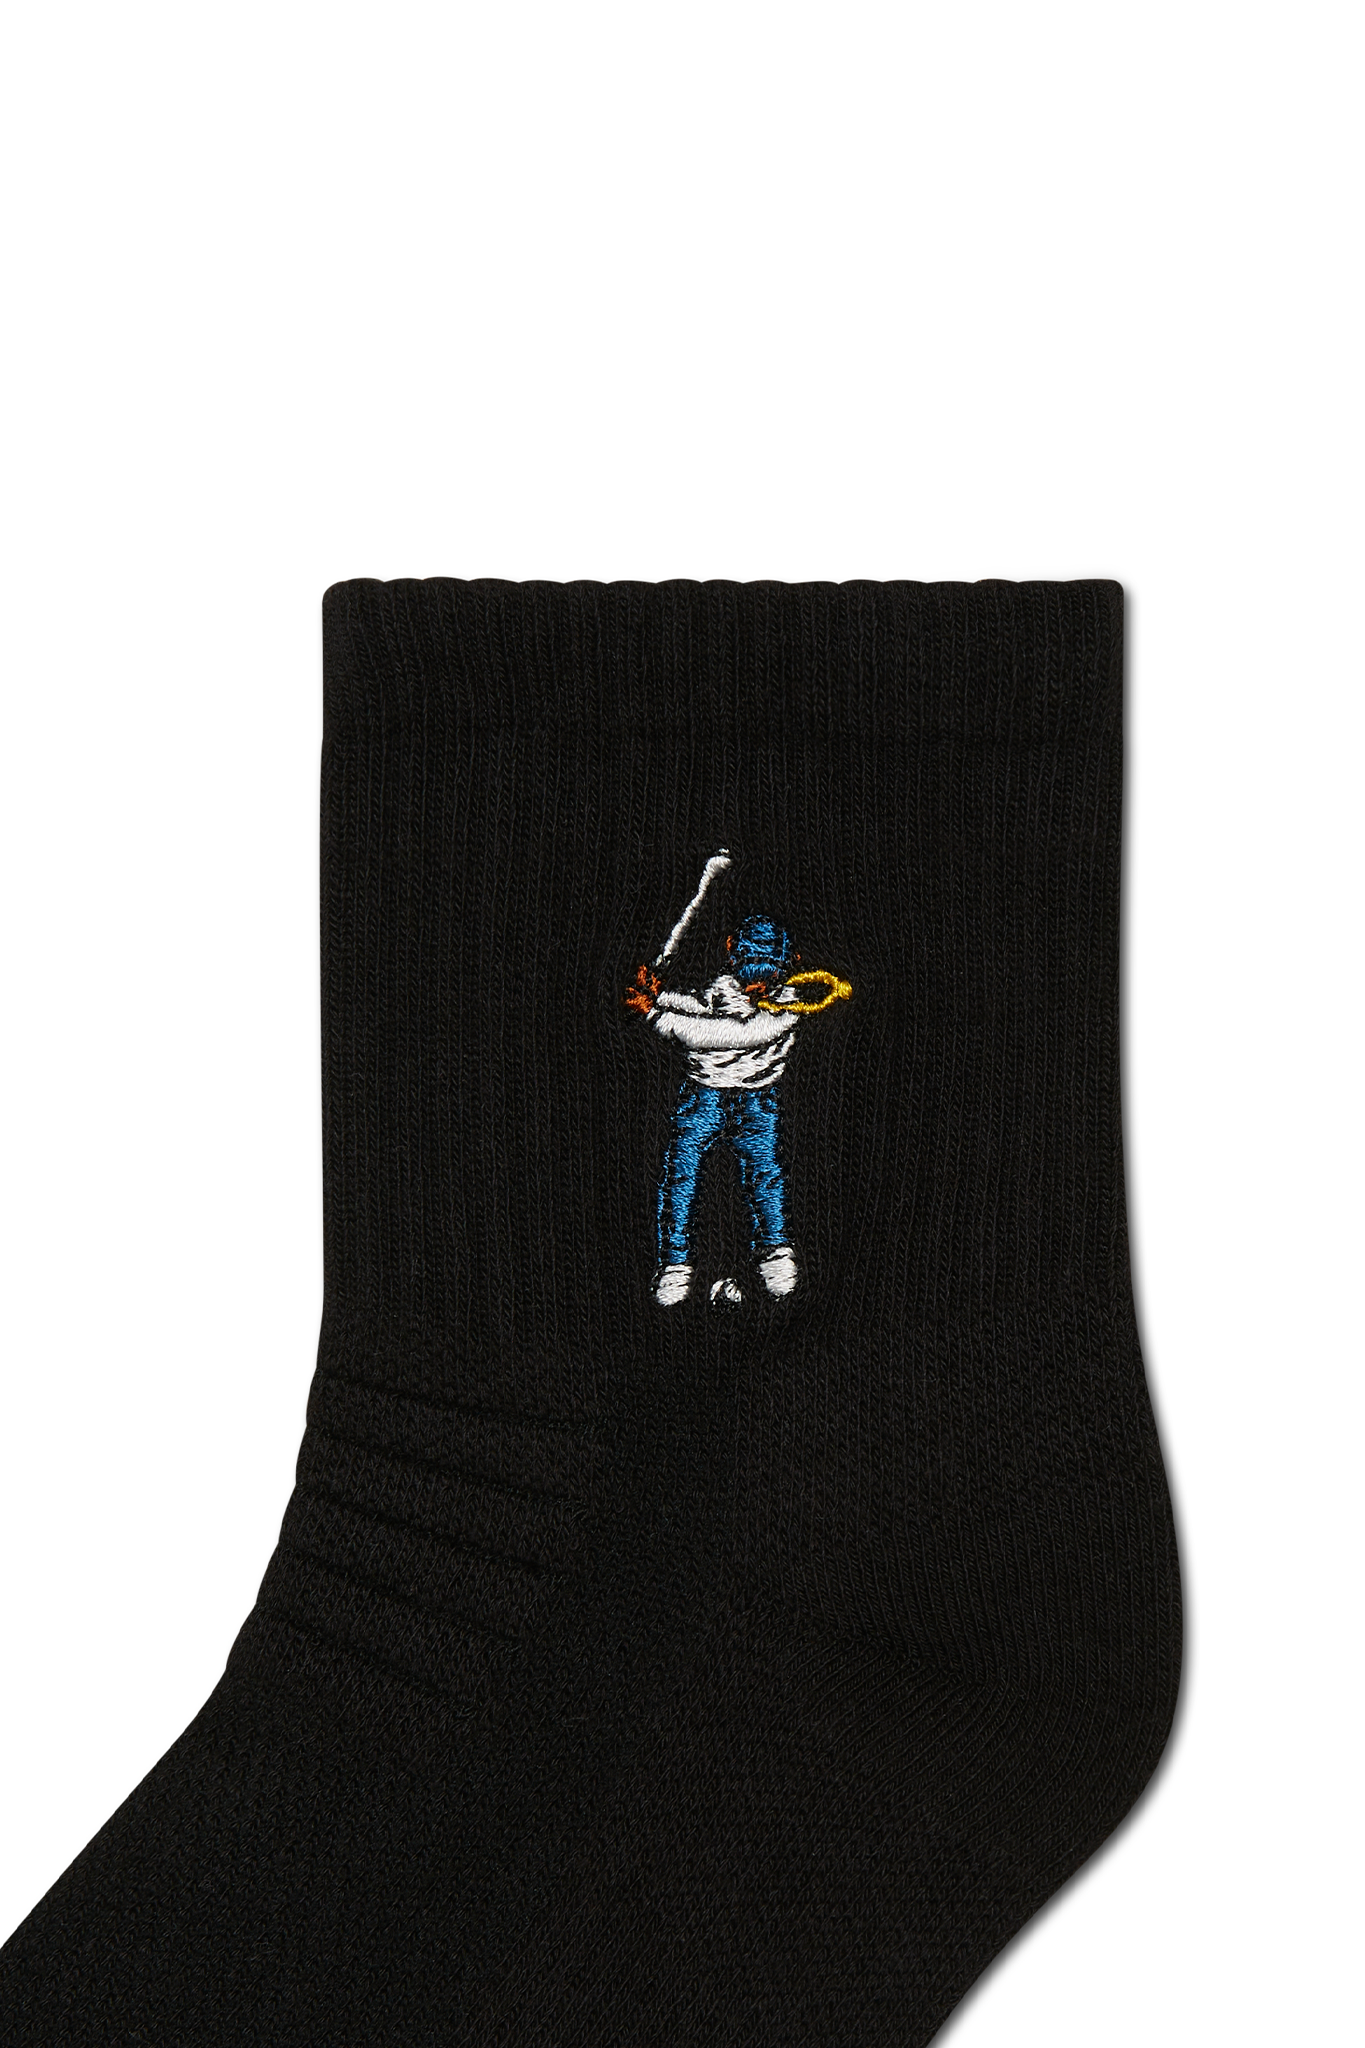 Eastside Golf Ankle Height Logo Socks Black